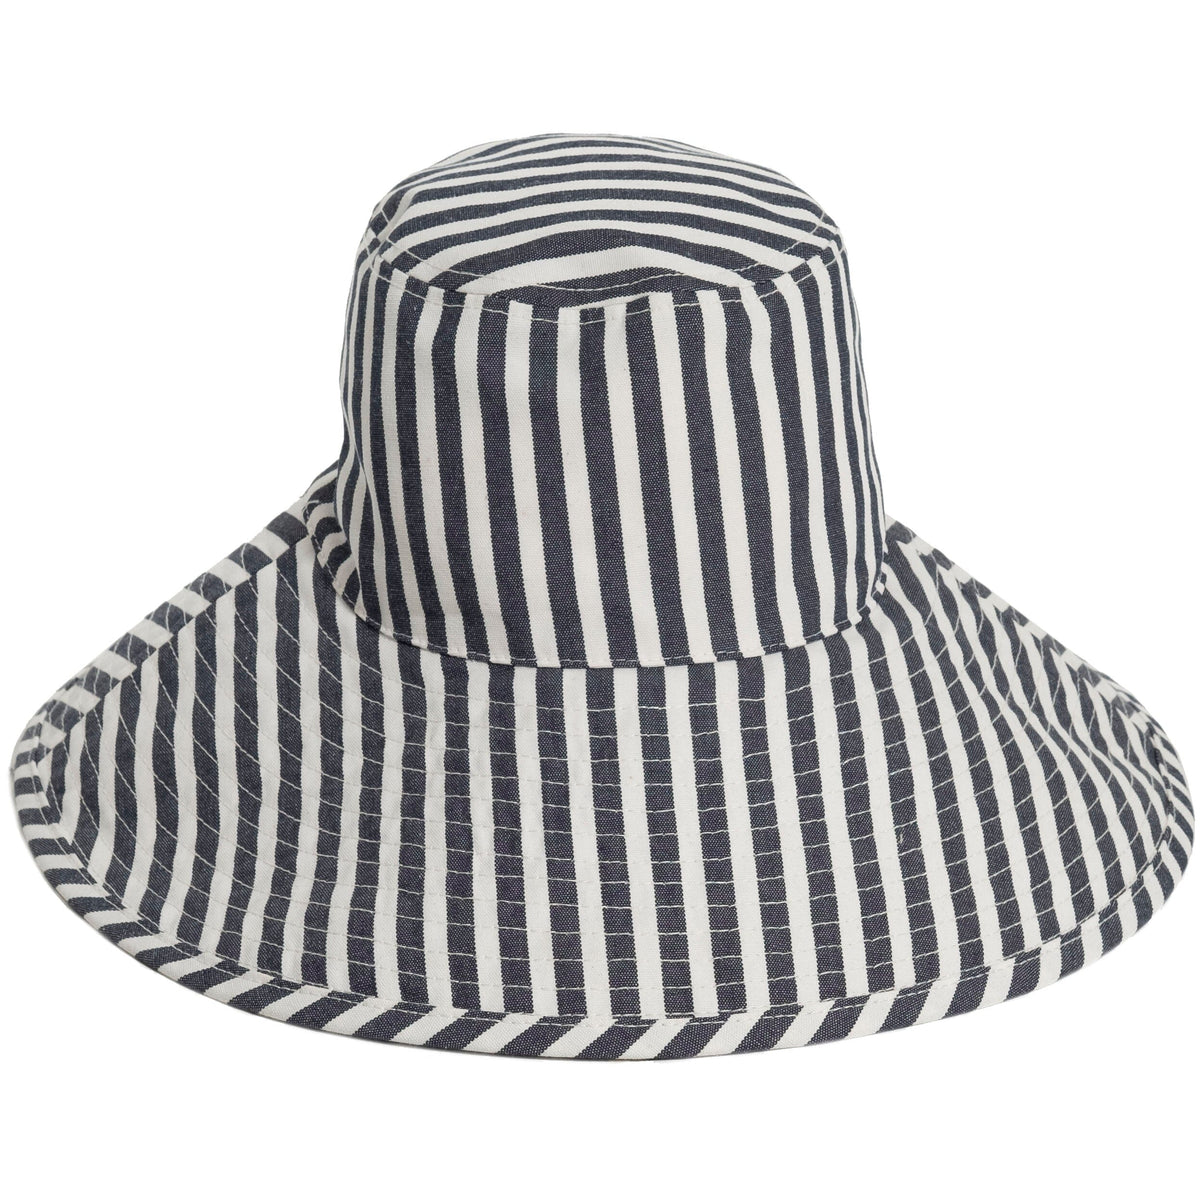 Trend Alert: Bucket Hat & Louis Vuitton Bucket Hat Review - The